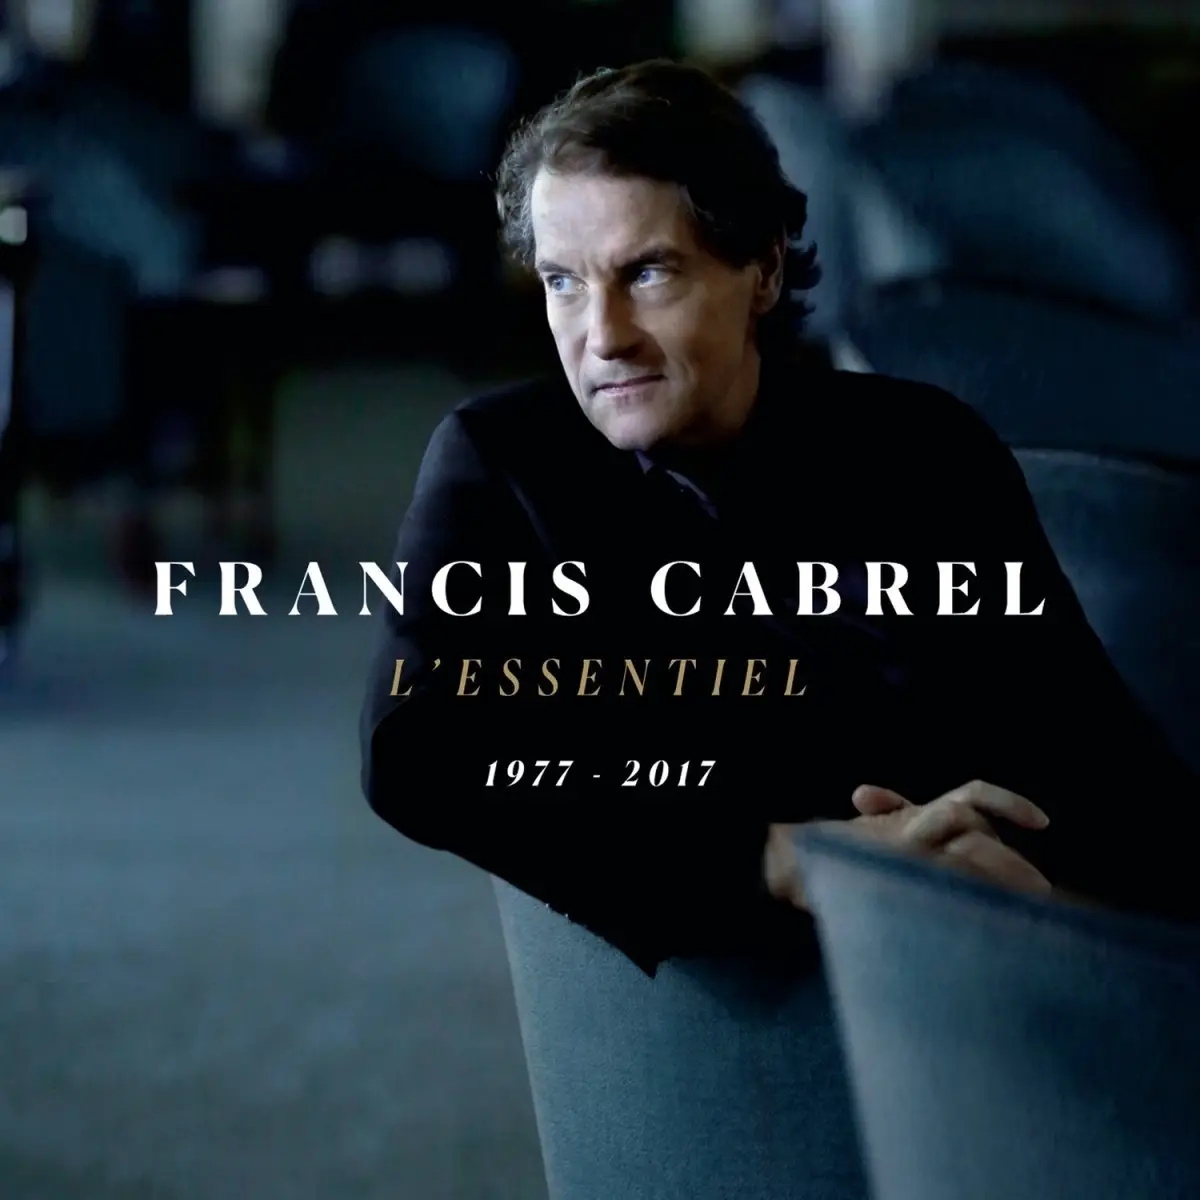 Francis Cabrel - L'Essentiel 1977-2017 [nouvelle version 3 CD], CD pas cher Amazon